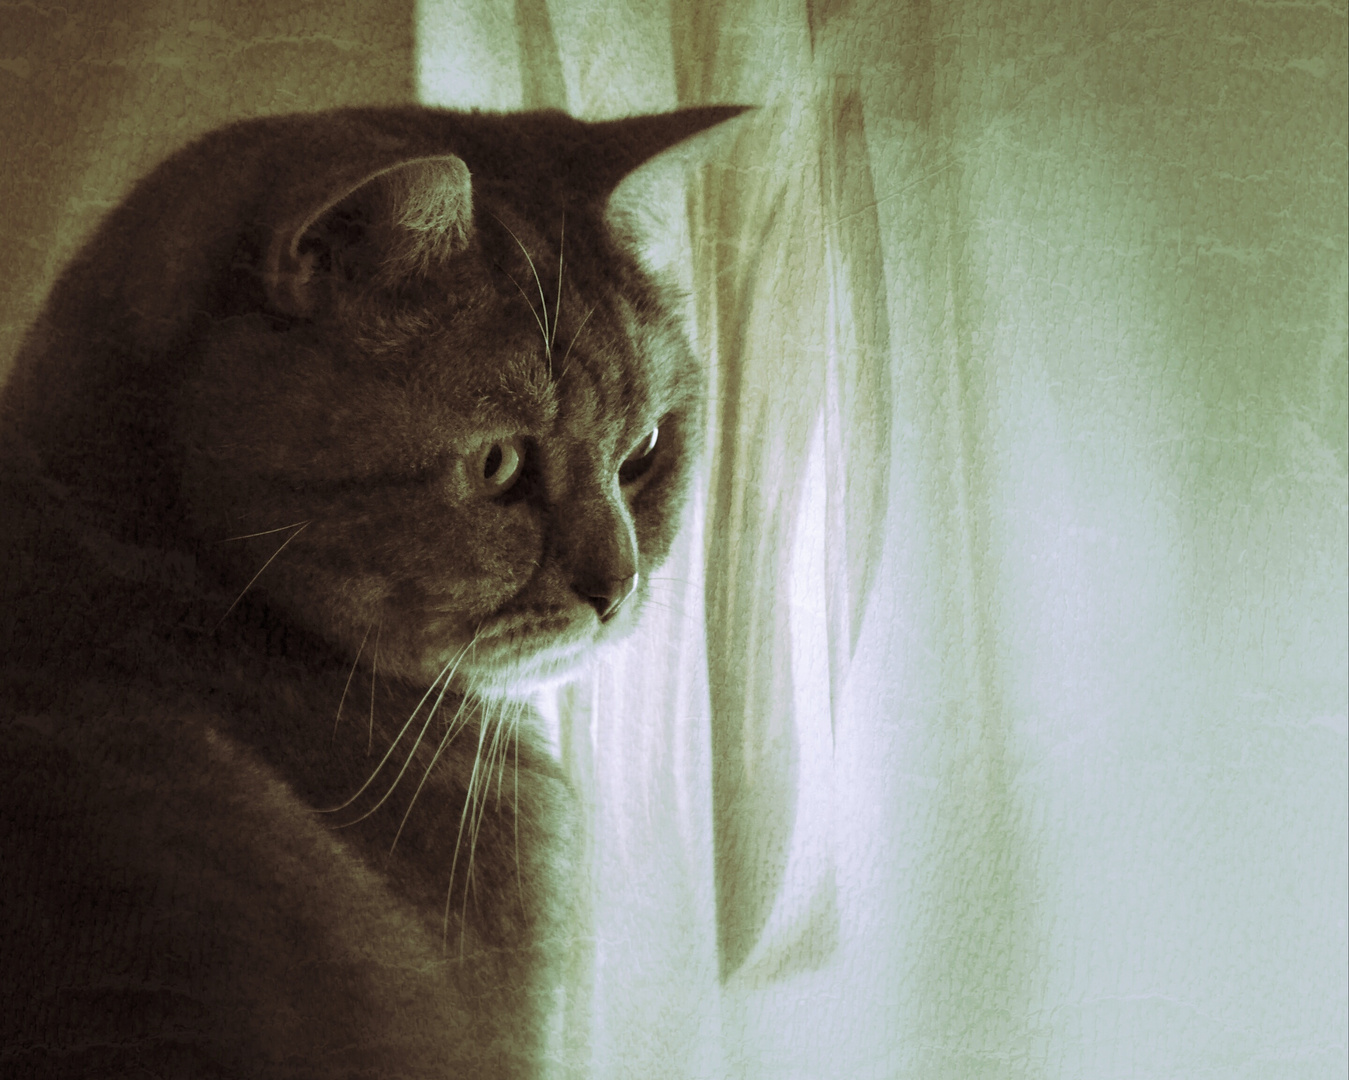 *Katze am Fenster*